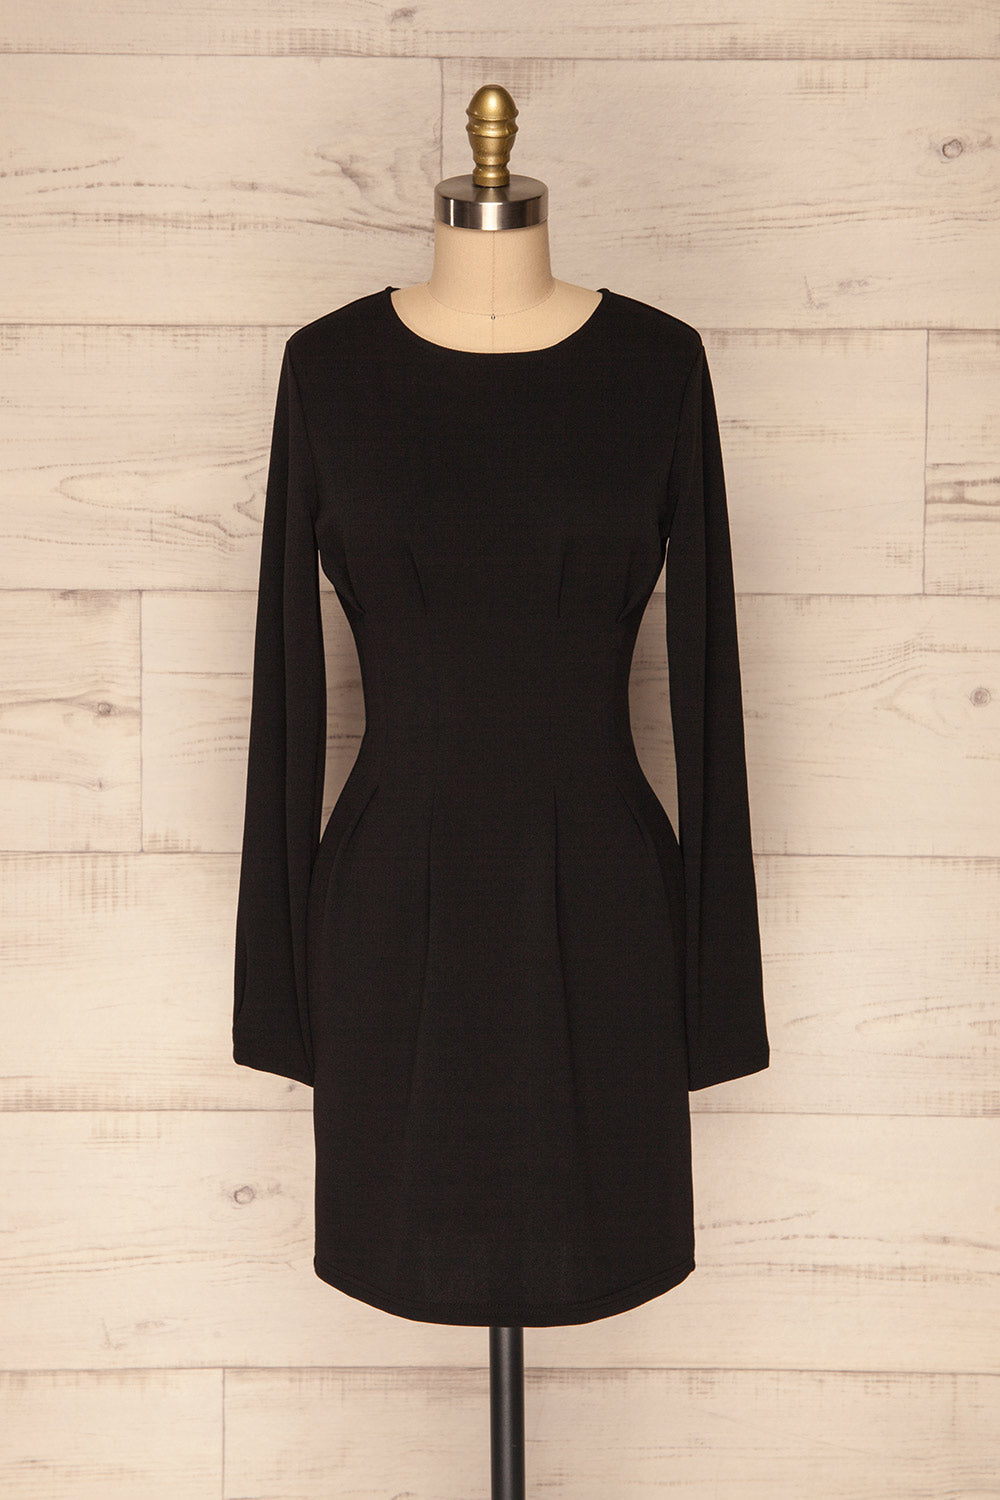 Plockton Black Long Sleeved Cocktail Dress | La Petite Garçonne front view